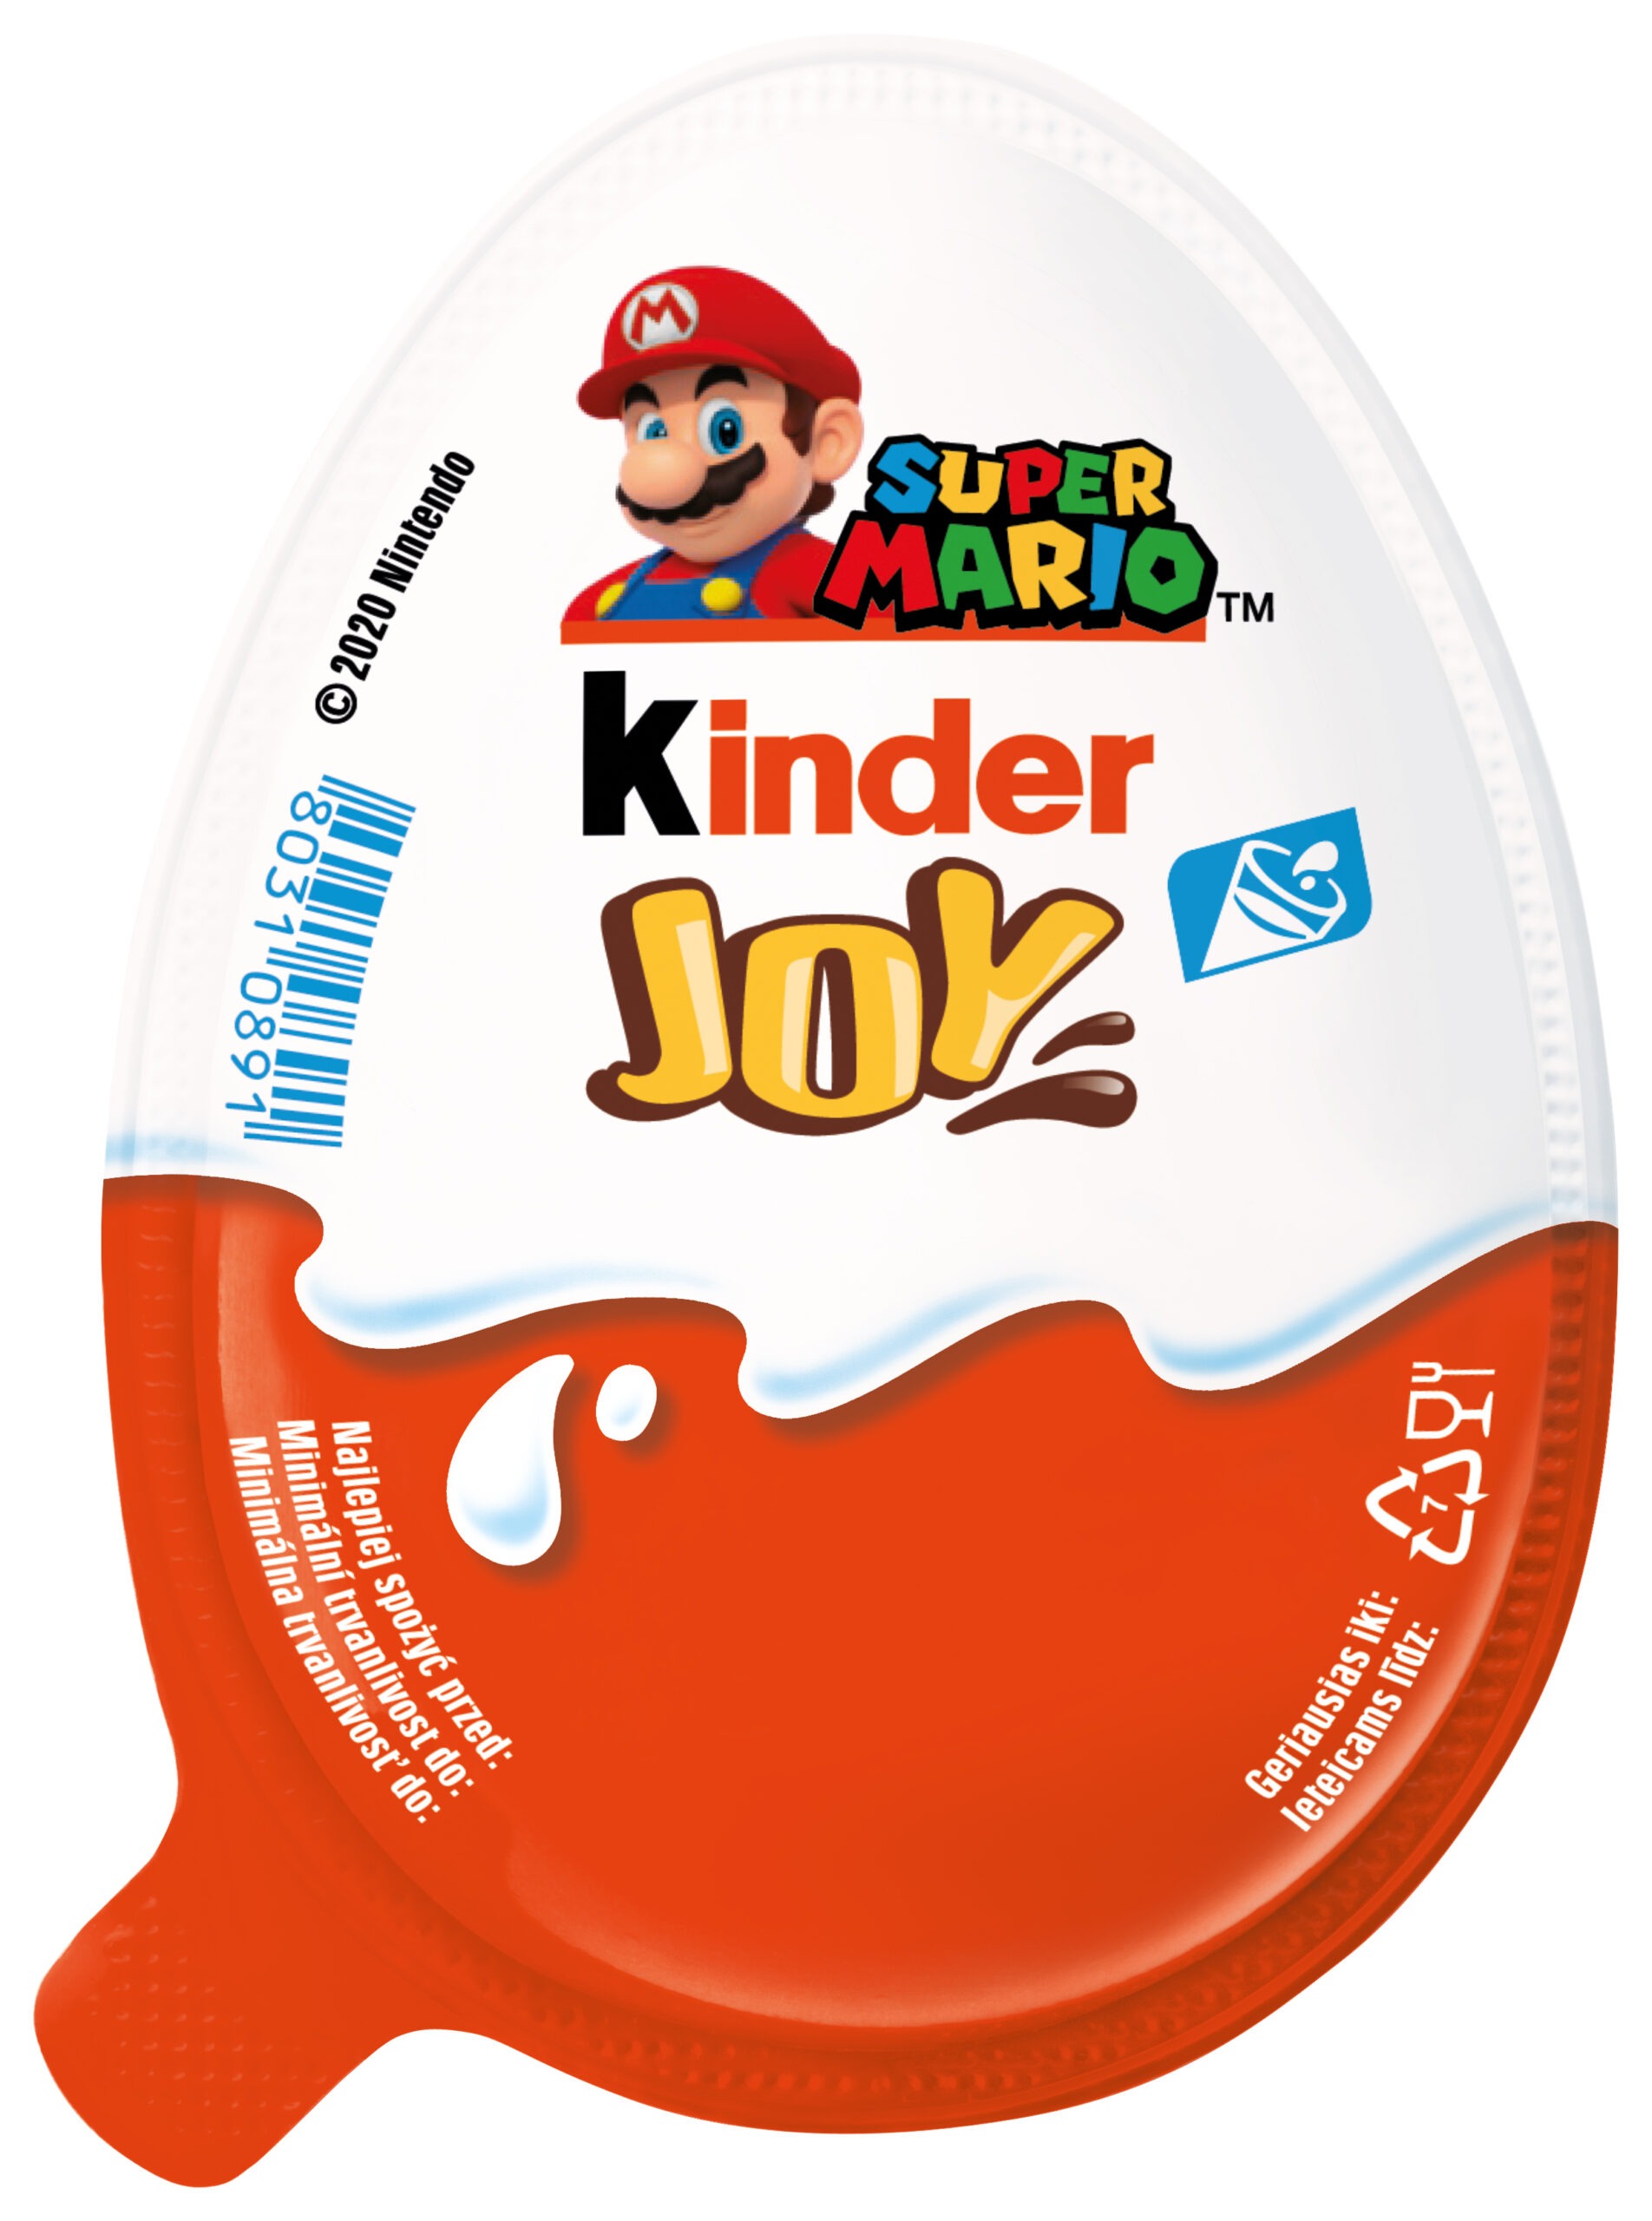 Киндер джой купить. Шоколадное яйцо kinder Joy super Mario. Киндер Джой Mario 20гр *24шт. Супер Марио Киндер Джой. Киндер Joy super Mario 24.